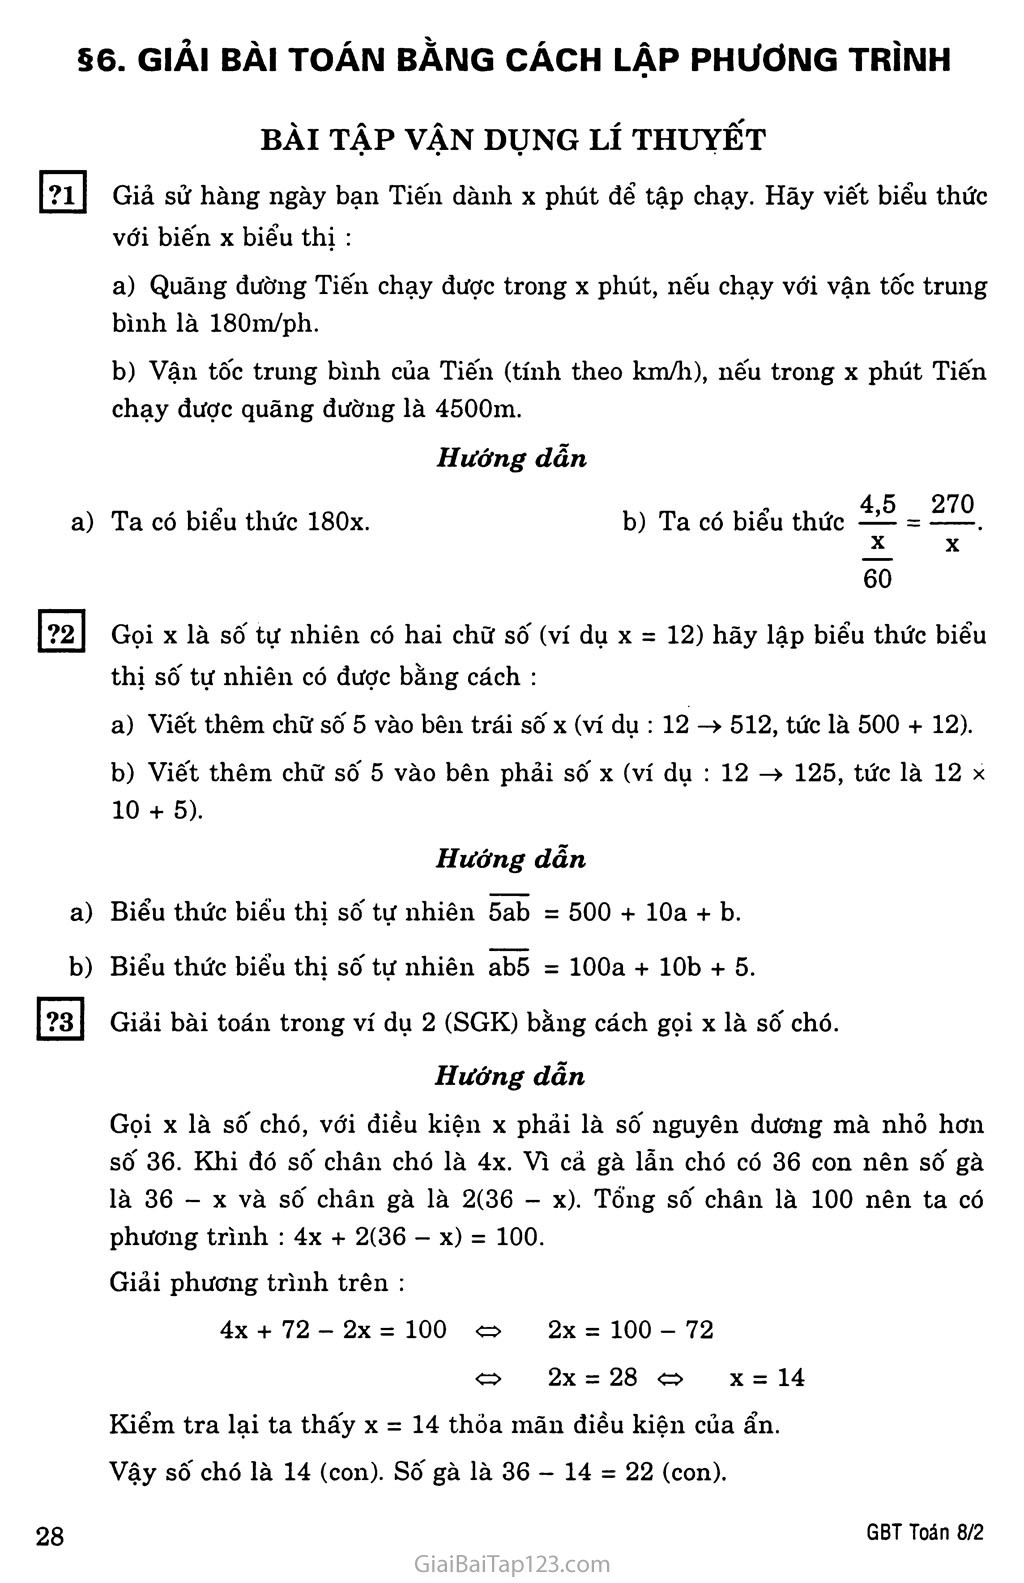 §6. Giải bài toán bằng cách lập phương trình trang 1